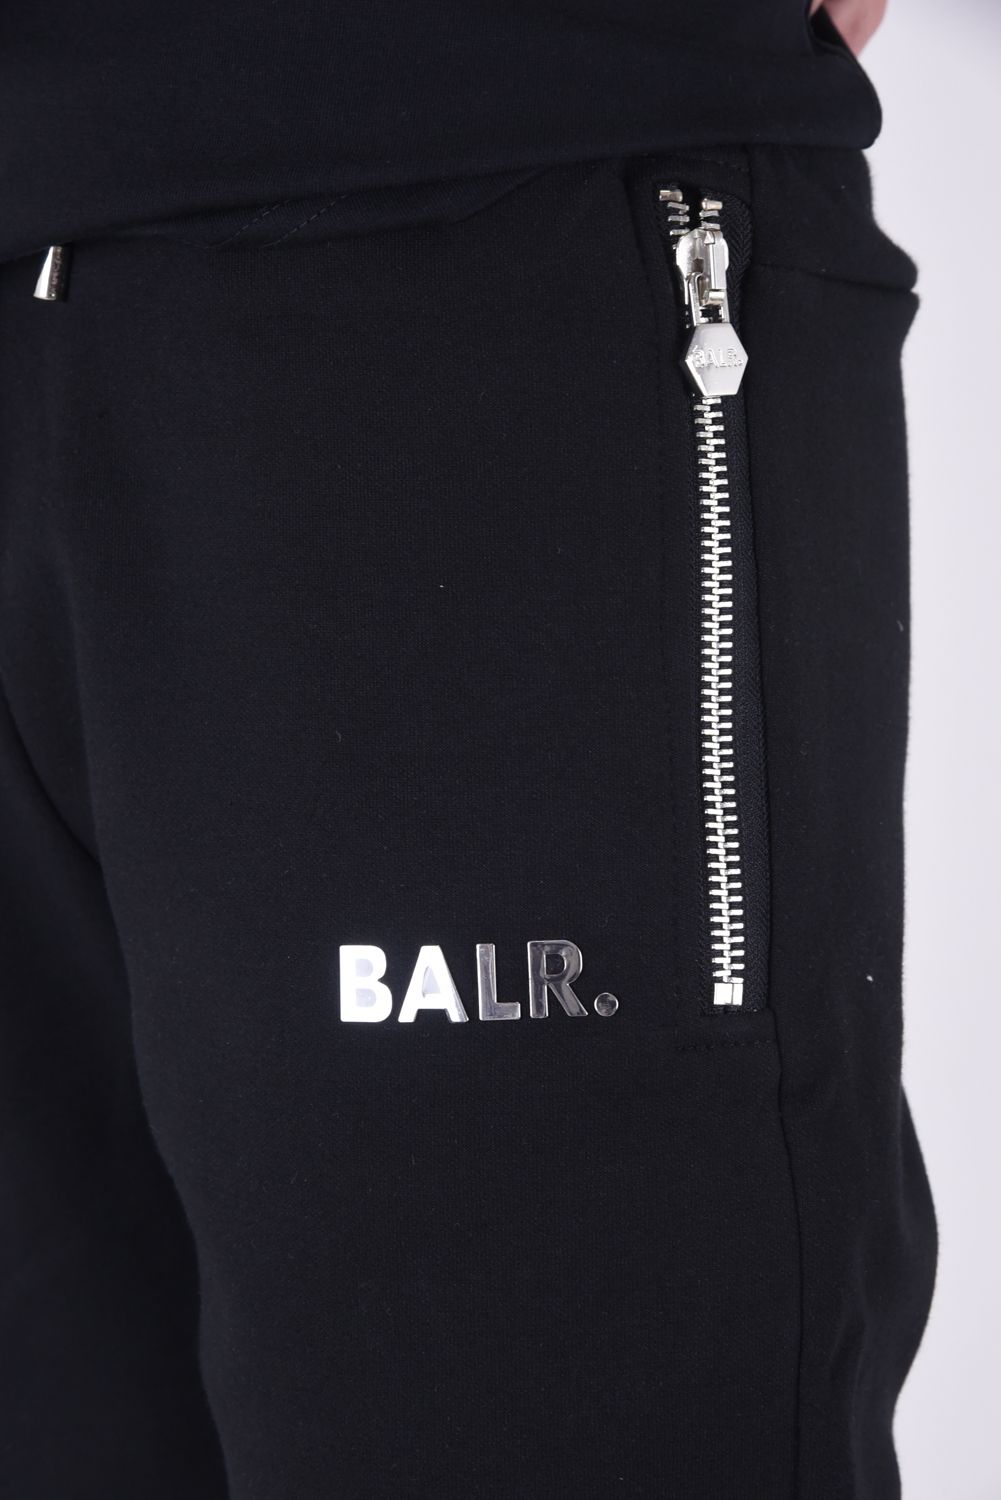 BALR. - Q-Series Slim Classic Sweatpants / メタルロゴ クラシック 